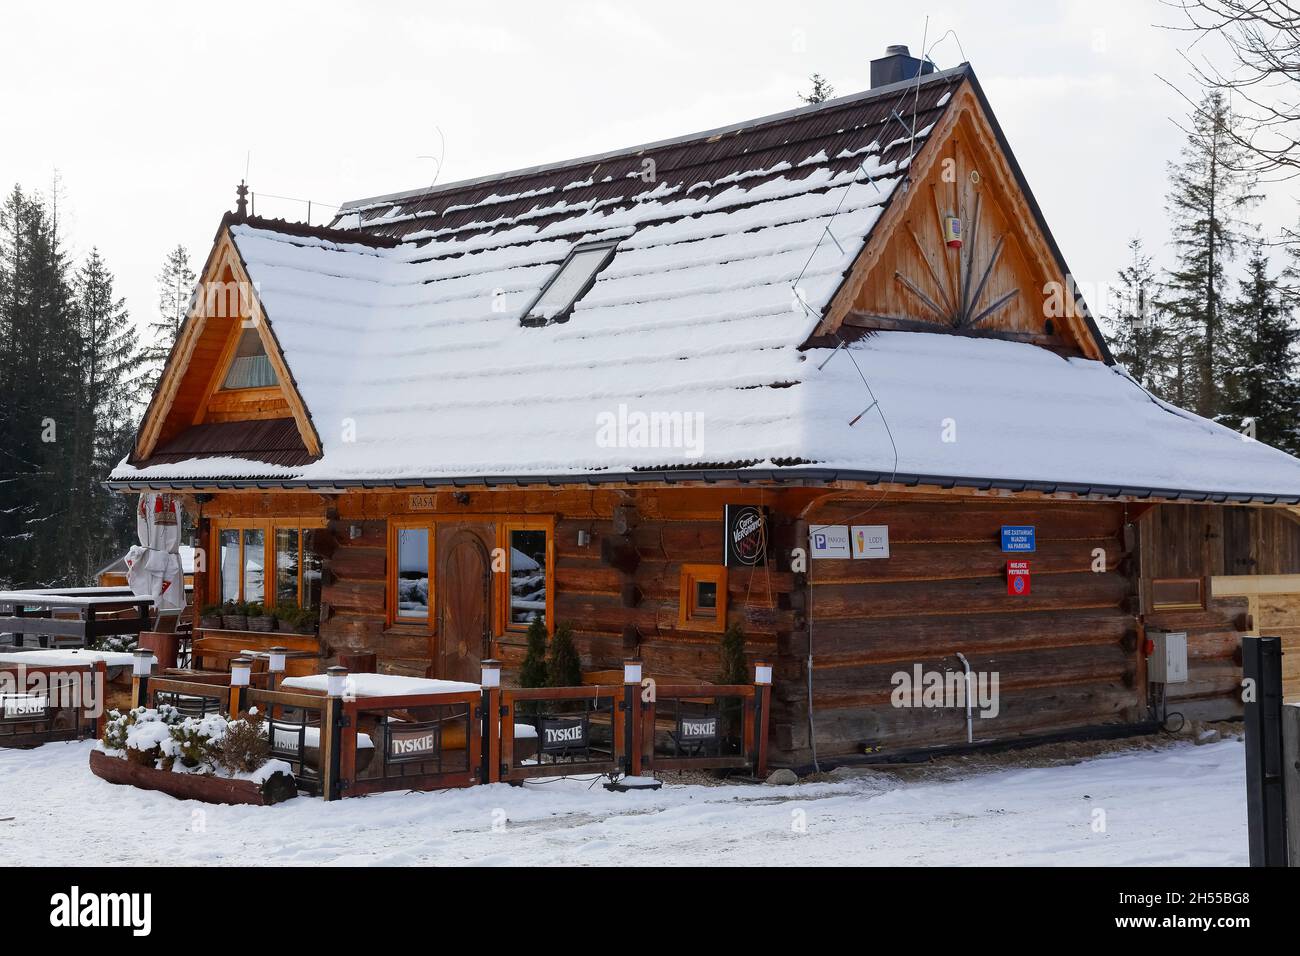 Zakopane, Pologne - 21 mars 2018 : le bâtiment en bois, construit dans le style d'un chalet de montagne, abrite un restaurant et un café.C'est sh Banque D'Images